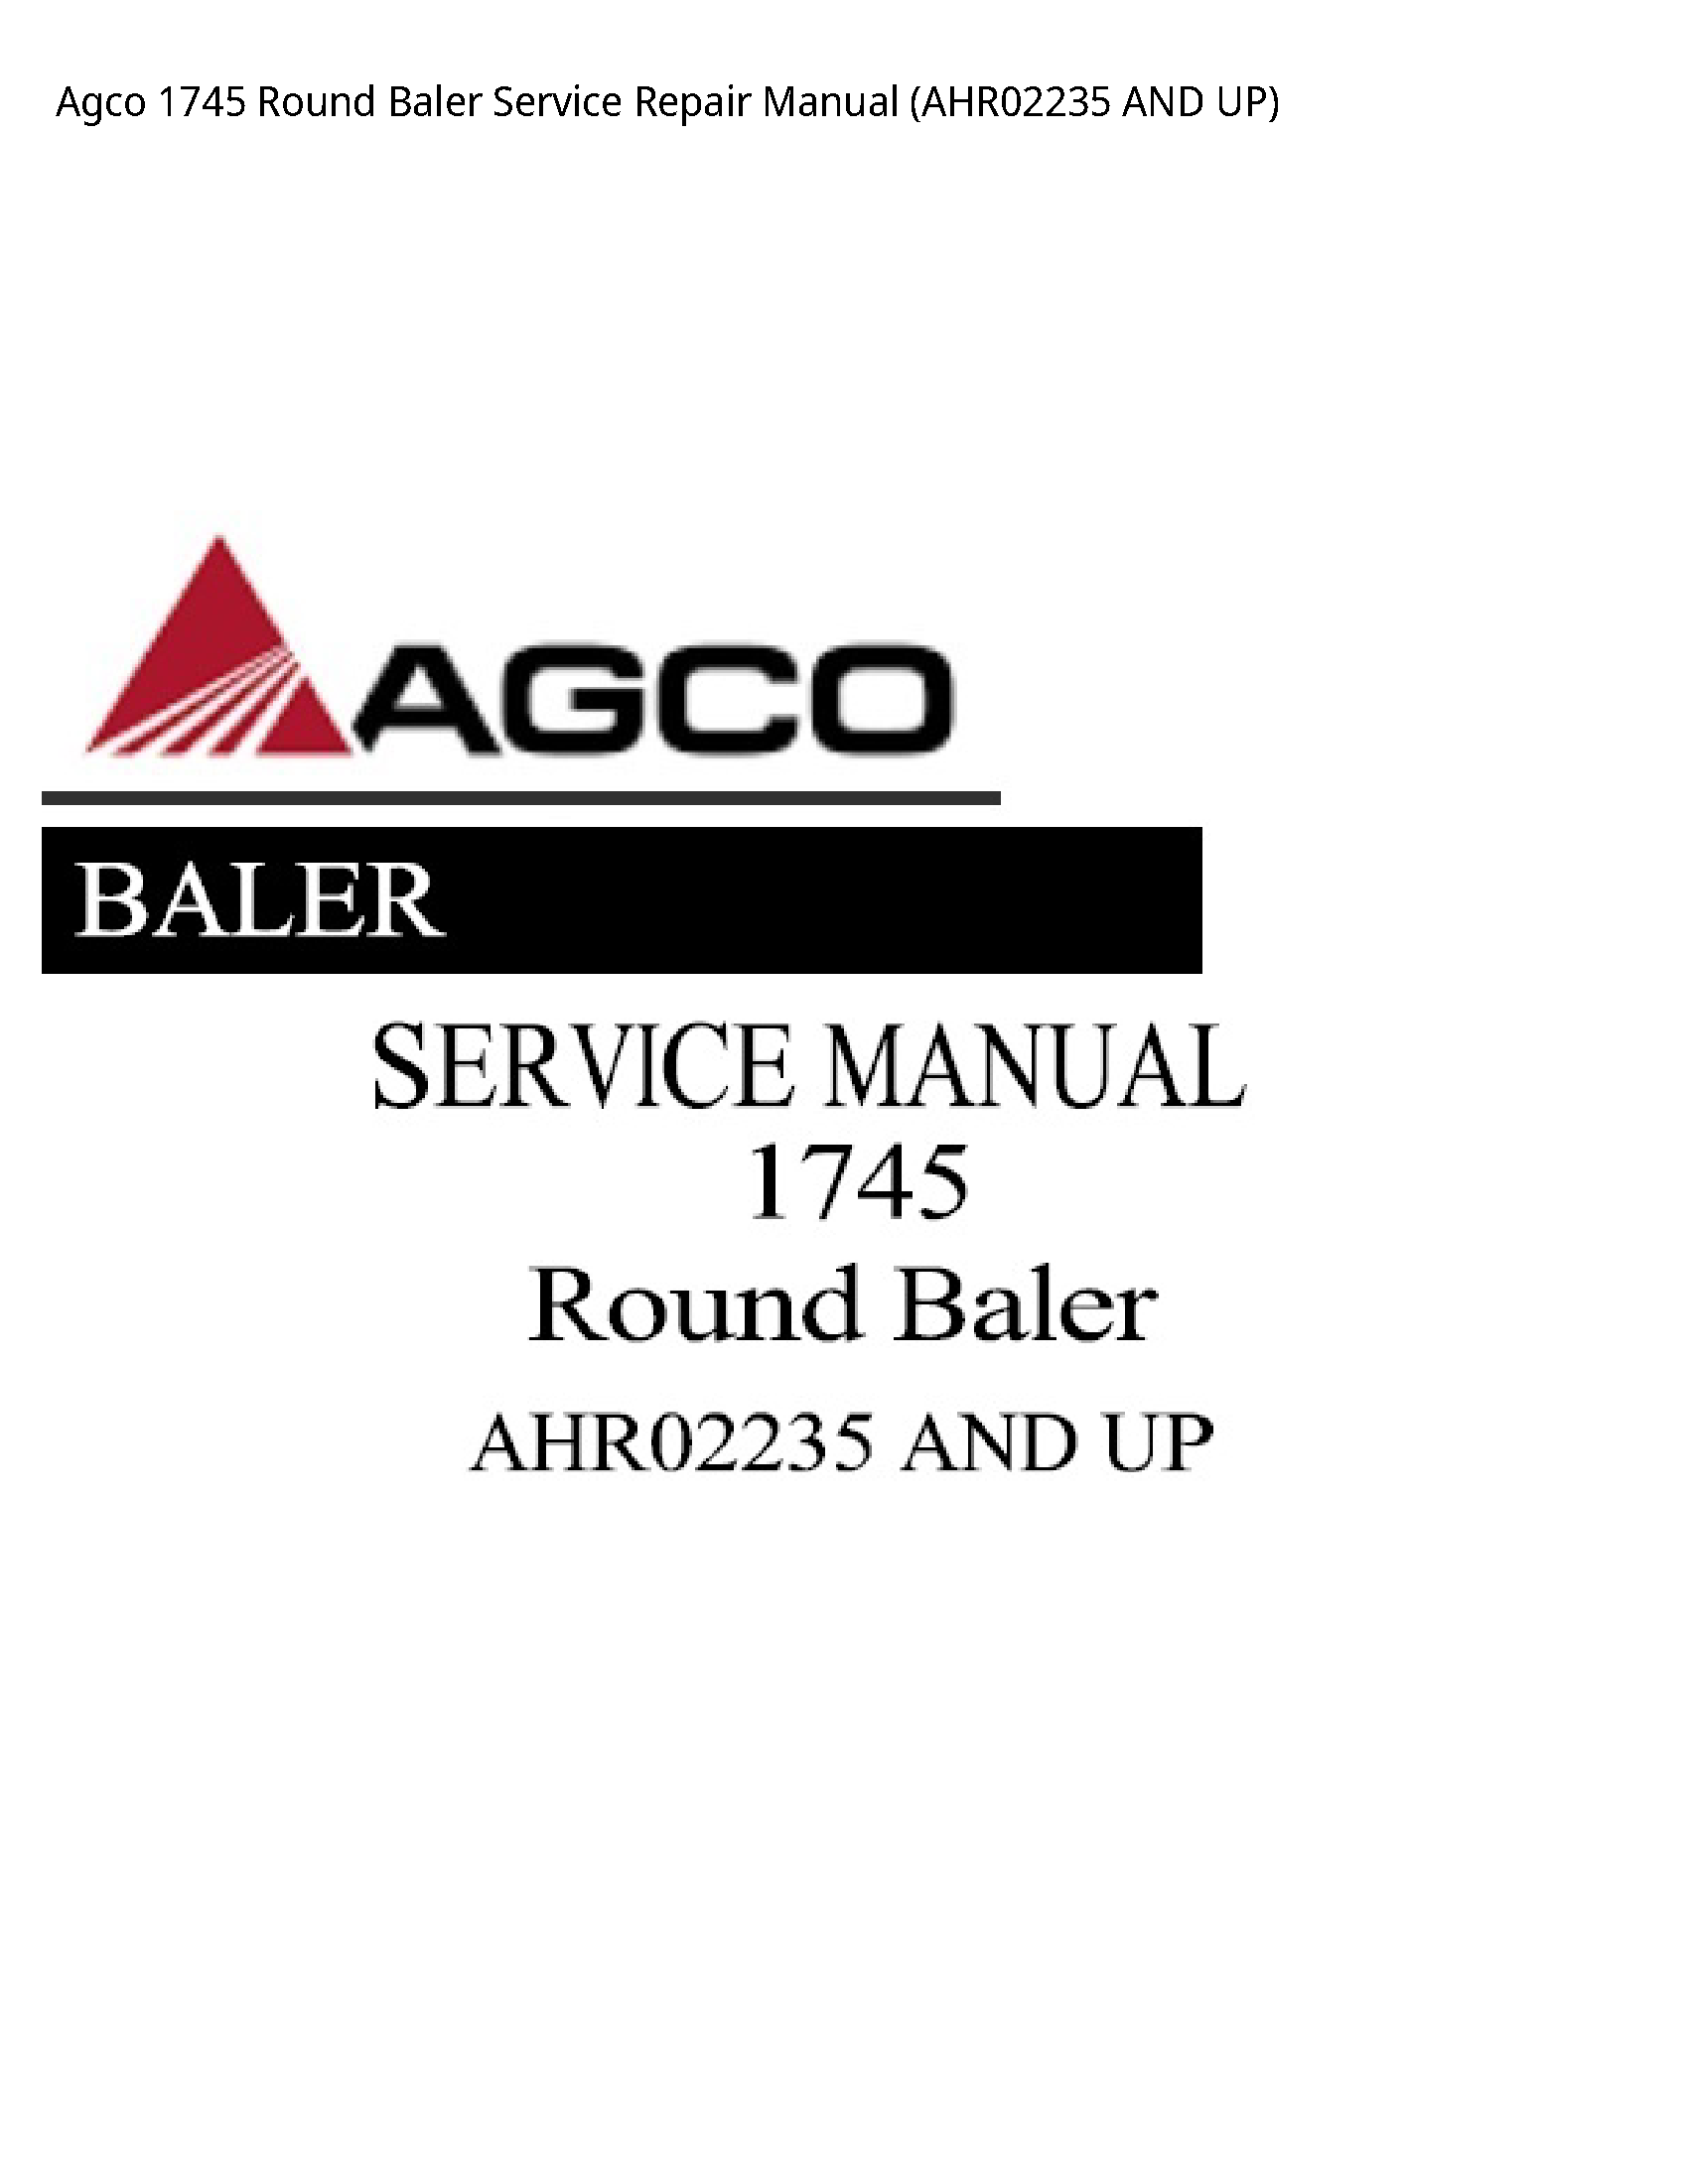 AGCO 1745 Round Baler manual